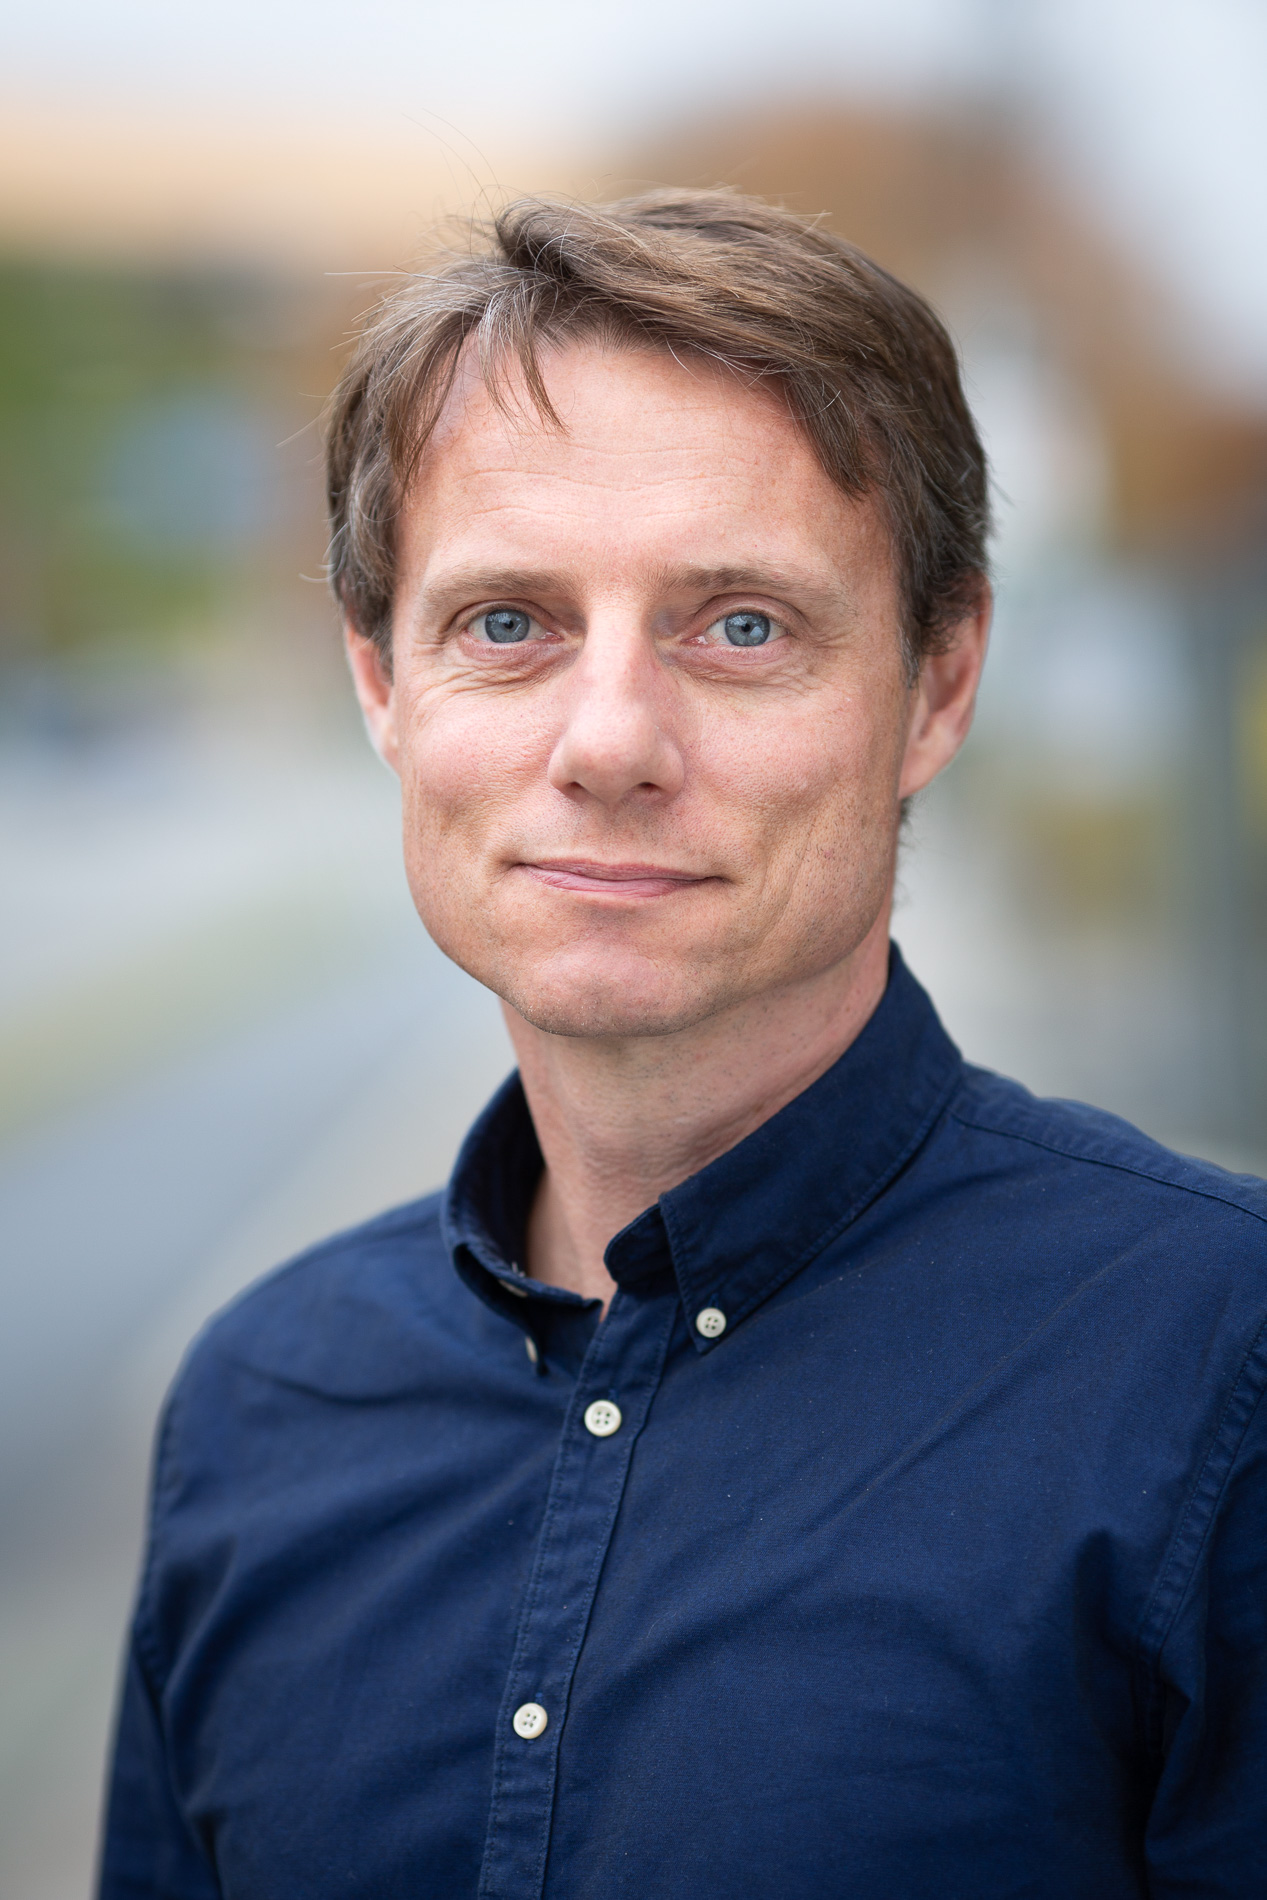 Portrætfoto af nyudnævnt professor Claus Johansen